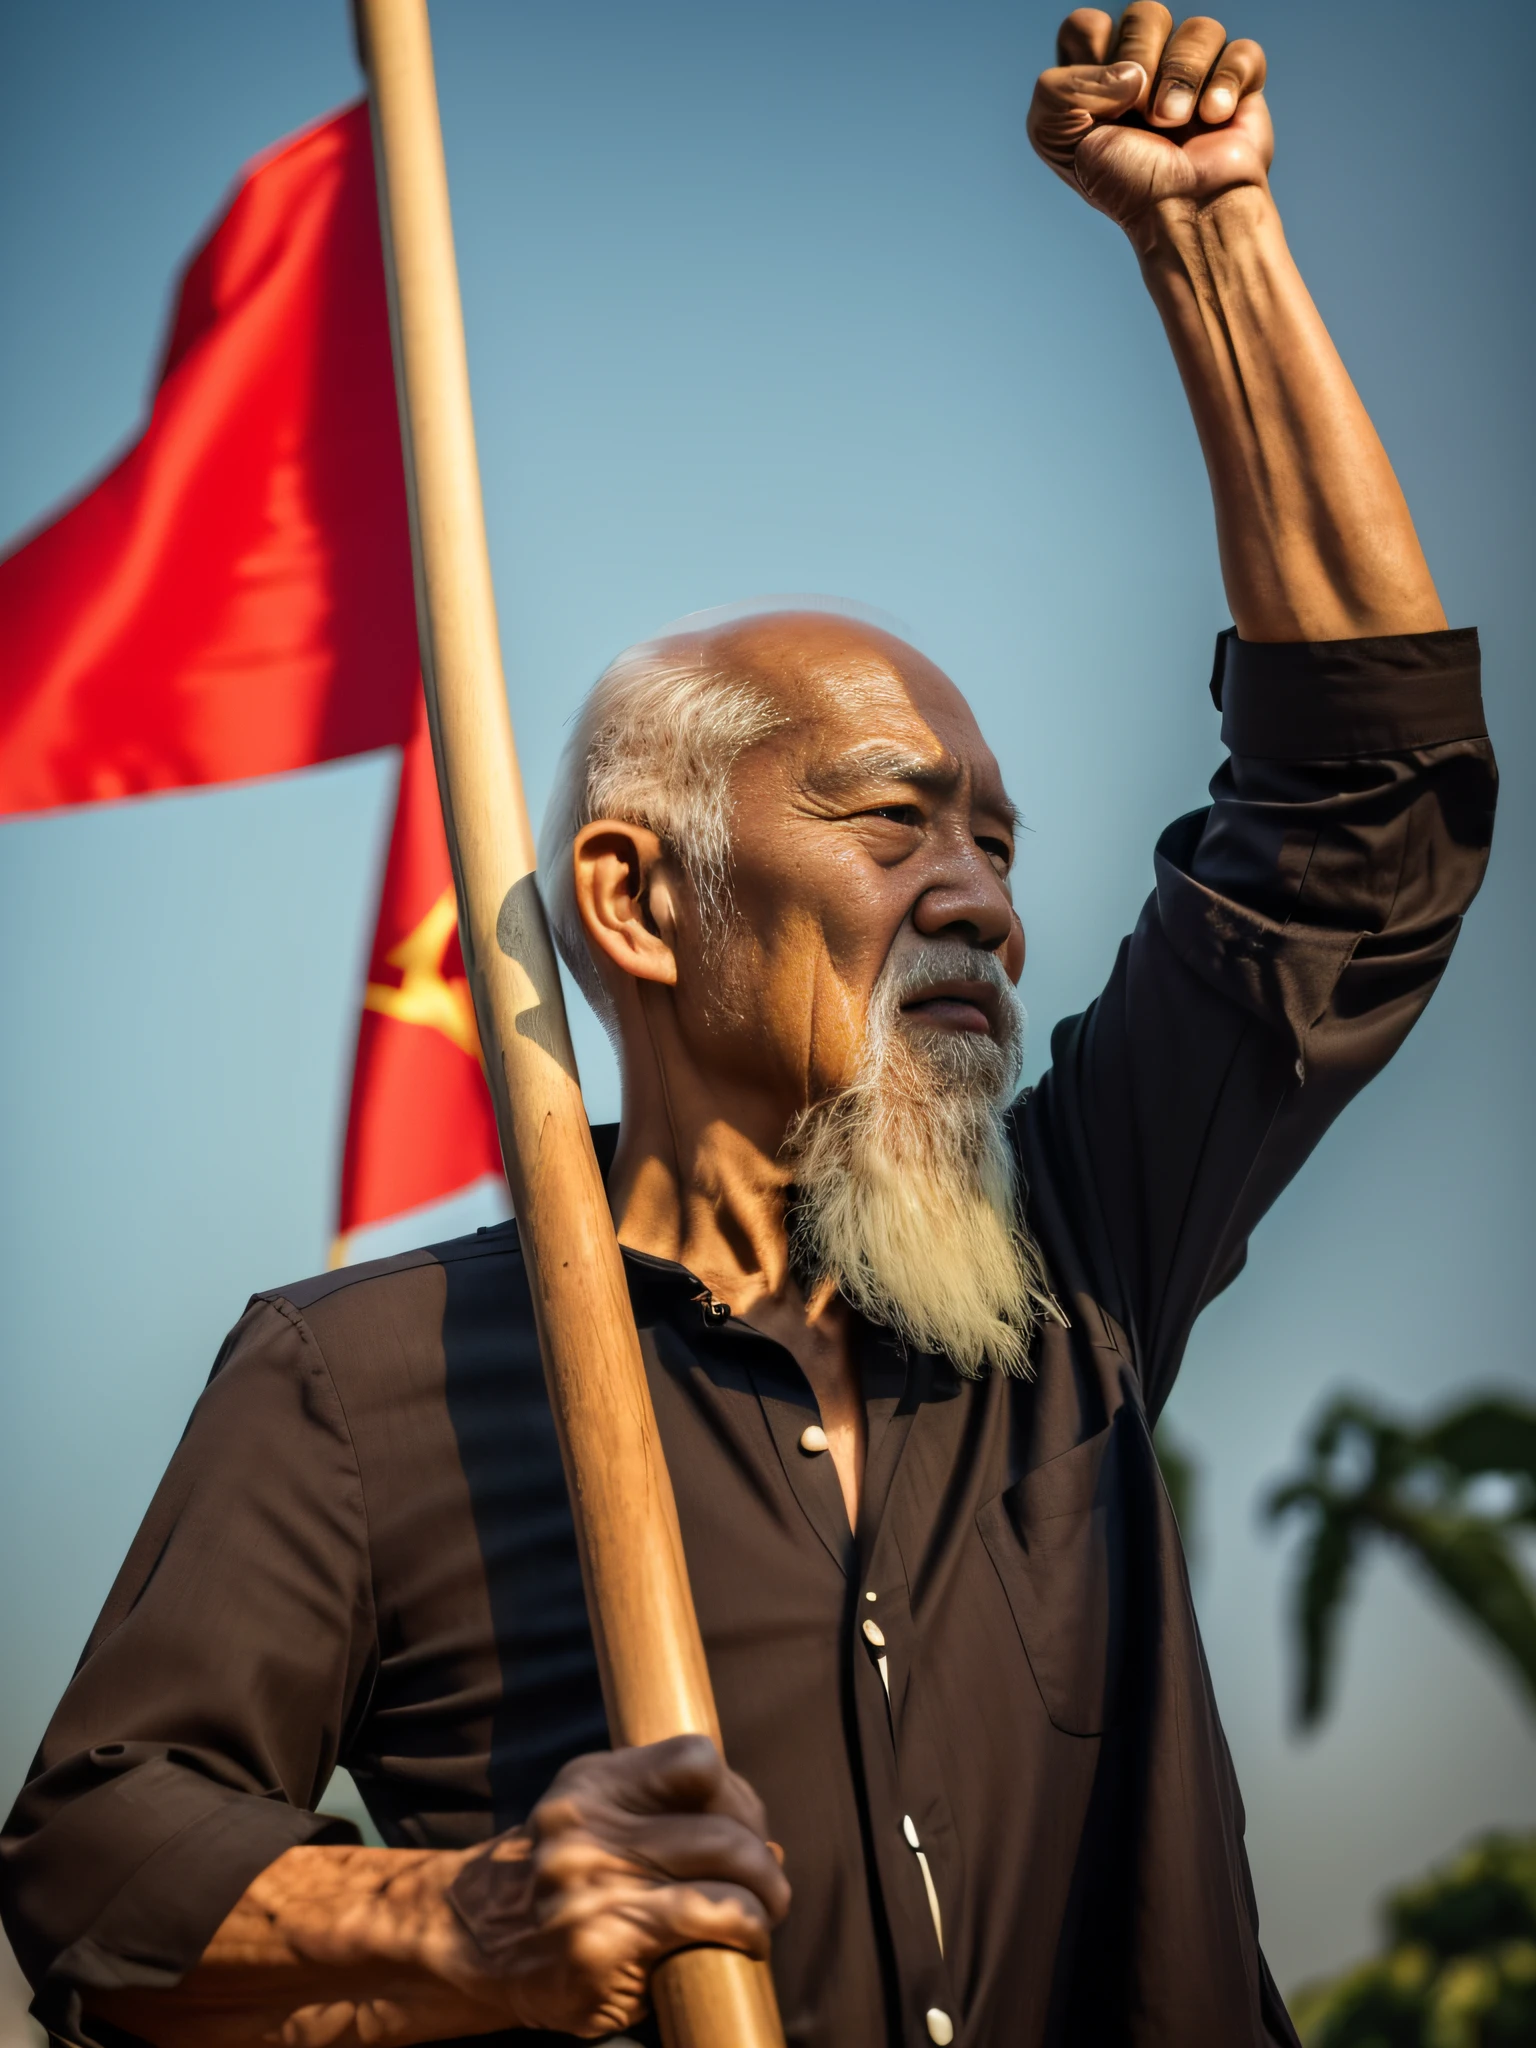 ((傑作), (最高品質), (RAW写真), (写実的な:1.4), 非常にリアルな写真, 85歳のベトナム人老人の肖像写真), 禿げた髪, 長い白いひげ, (黒の丸首シャツを着ている ), 旗竿を掲げる, 赤旗 ,照り付ける太陽, 1975年に富士フイルムXT3で撮影された写真